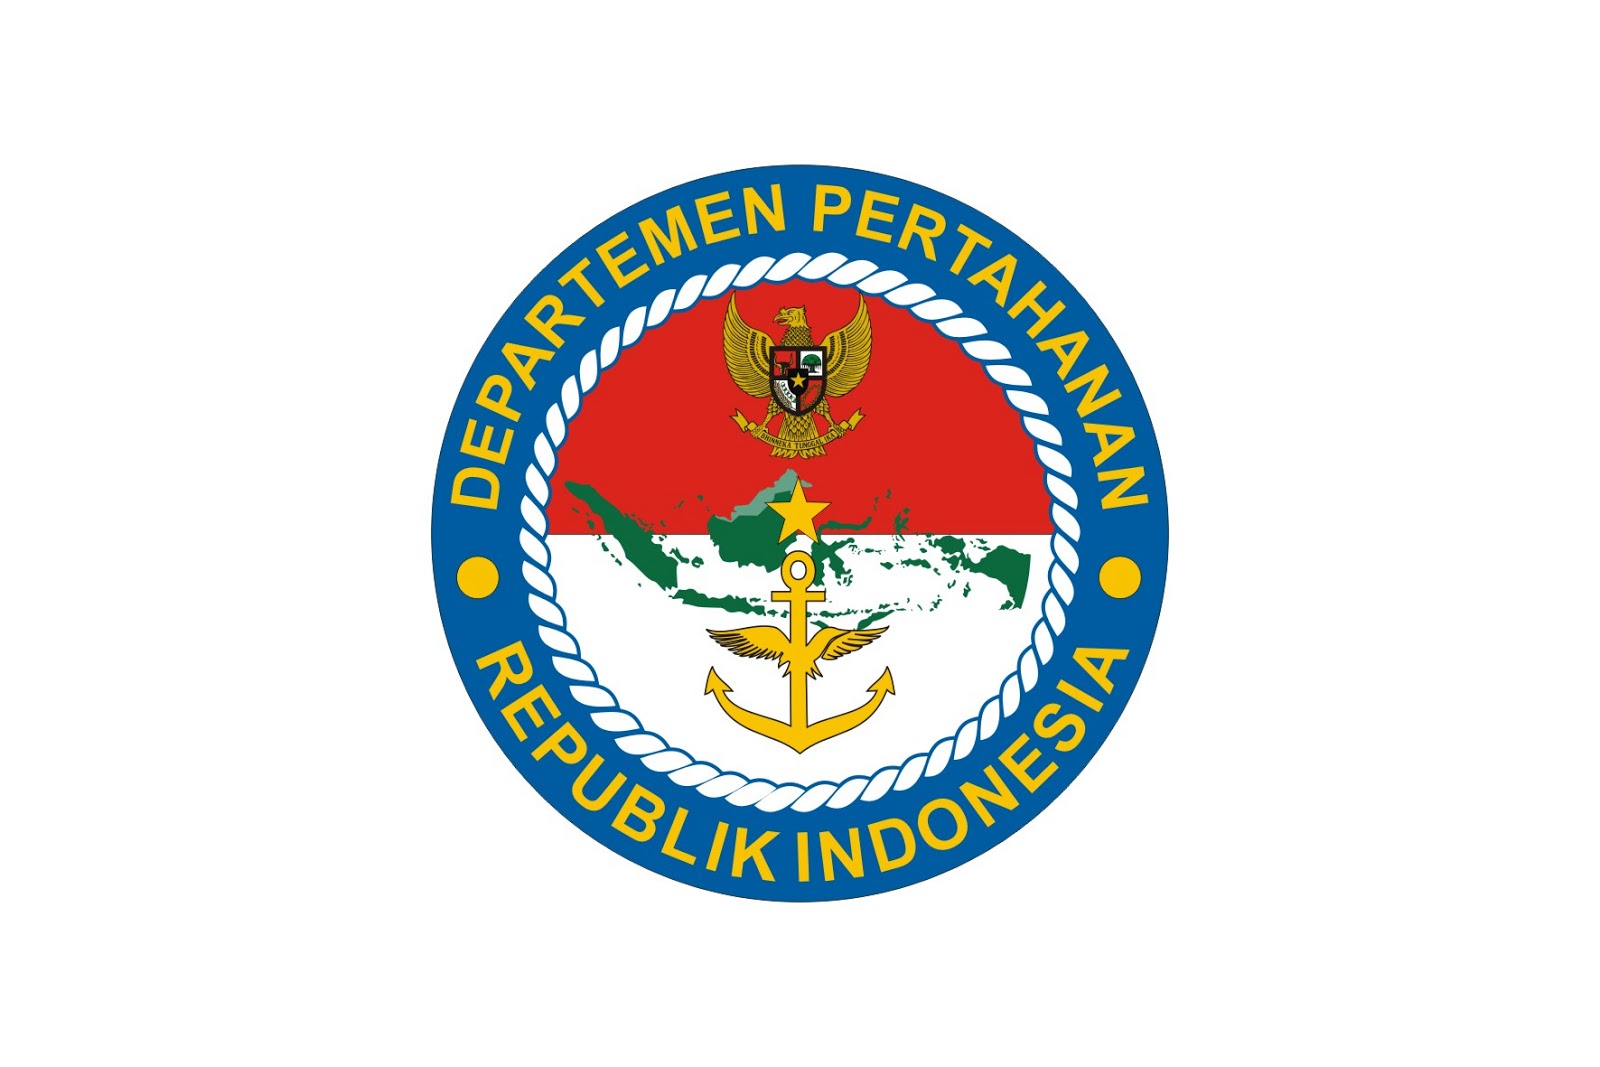  Kementerian  Pertahanan Logo  Logo  Share